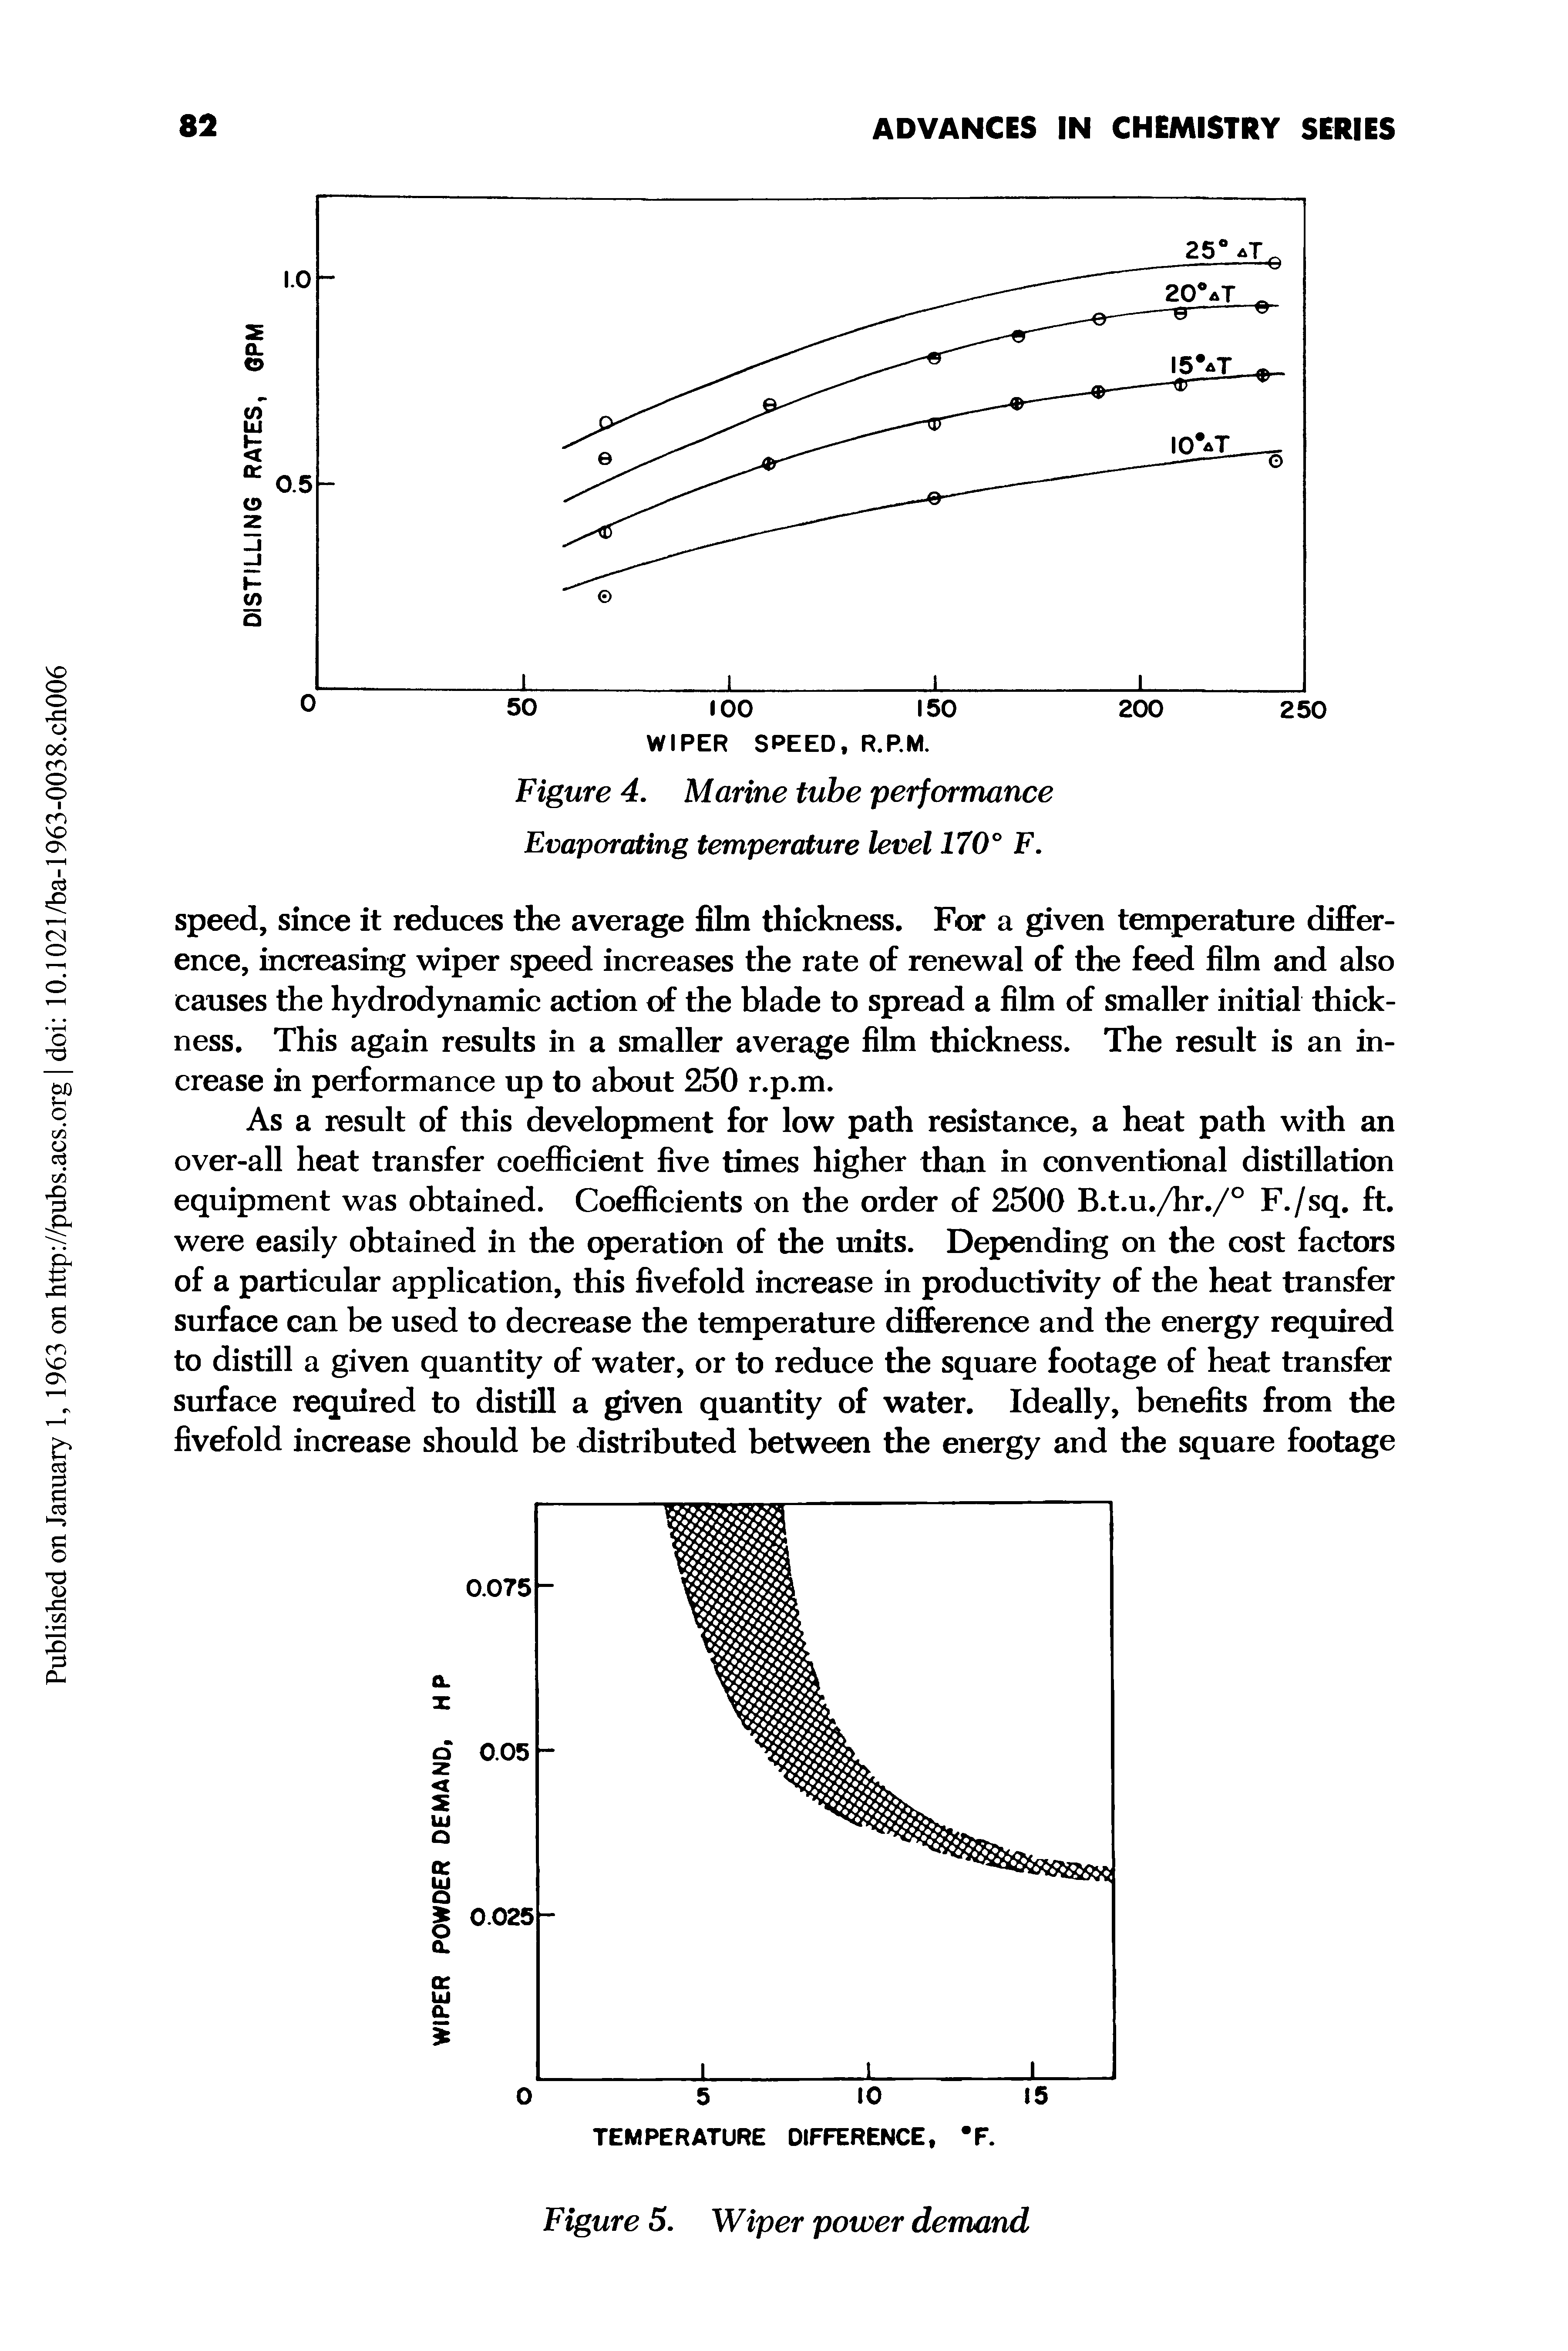 Figure 4. Marine tube performance Evaporating temperature level 170° F.